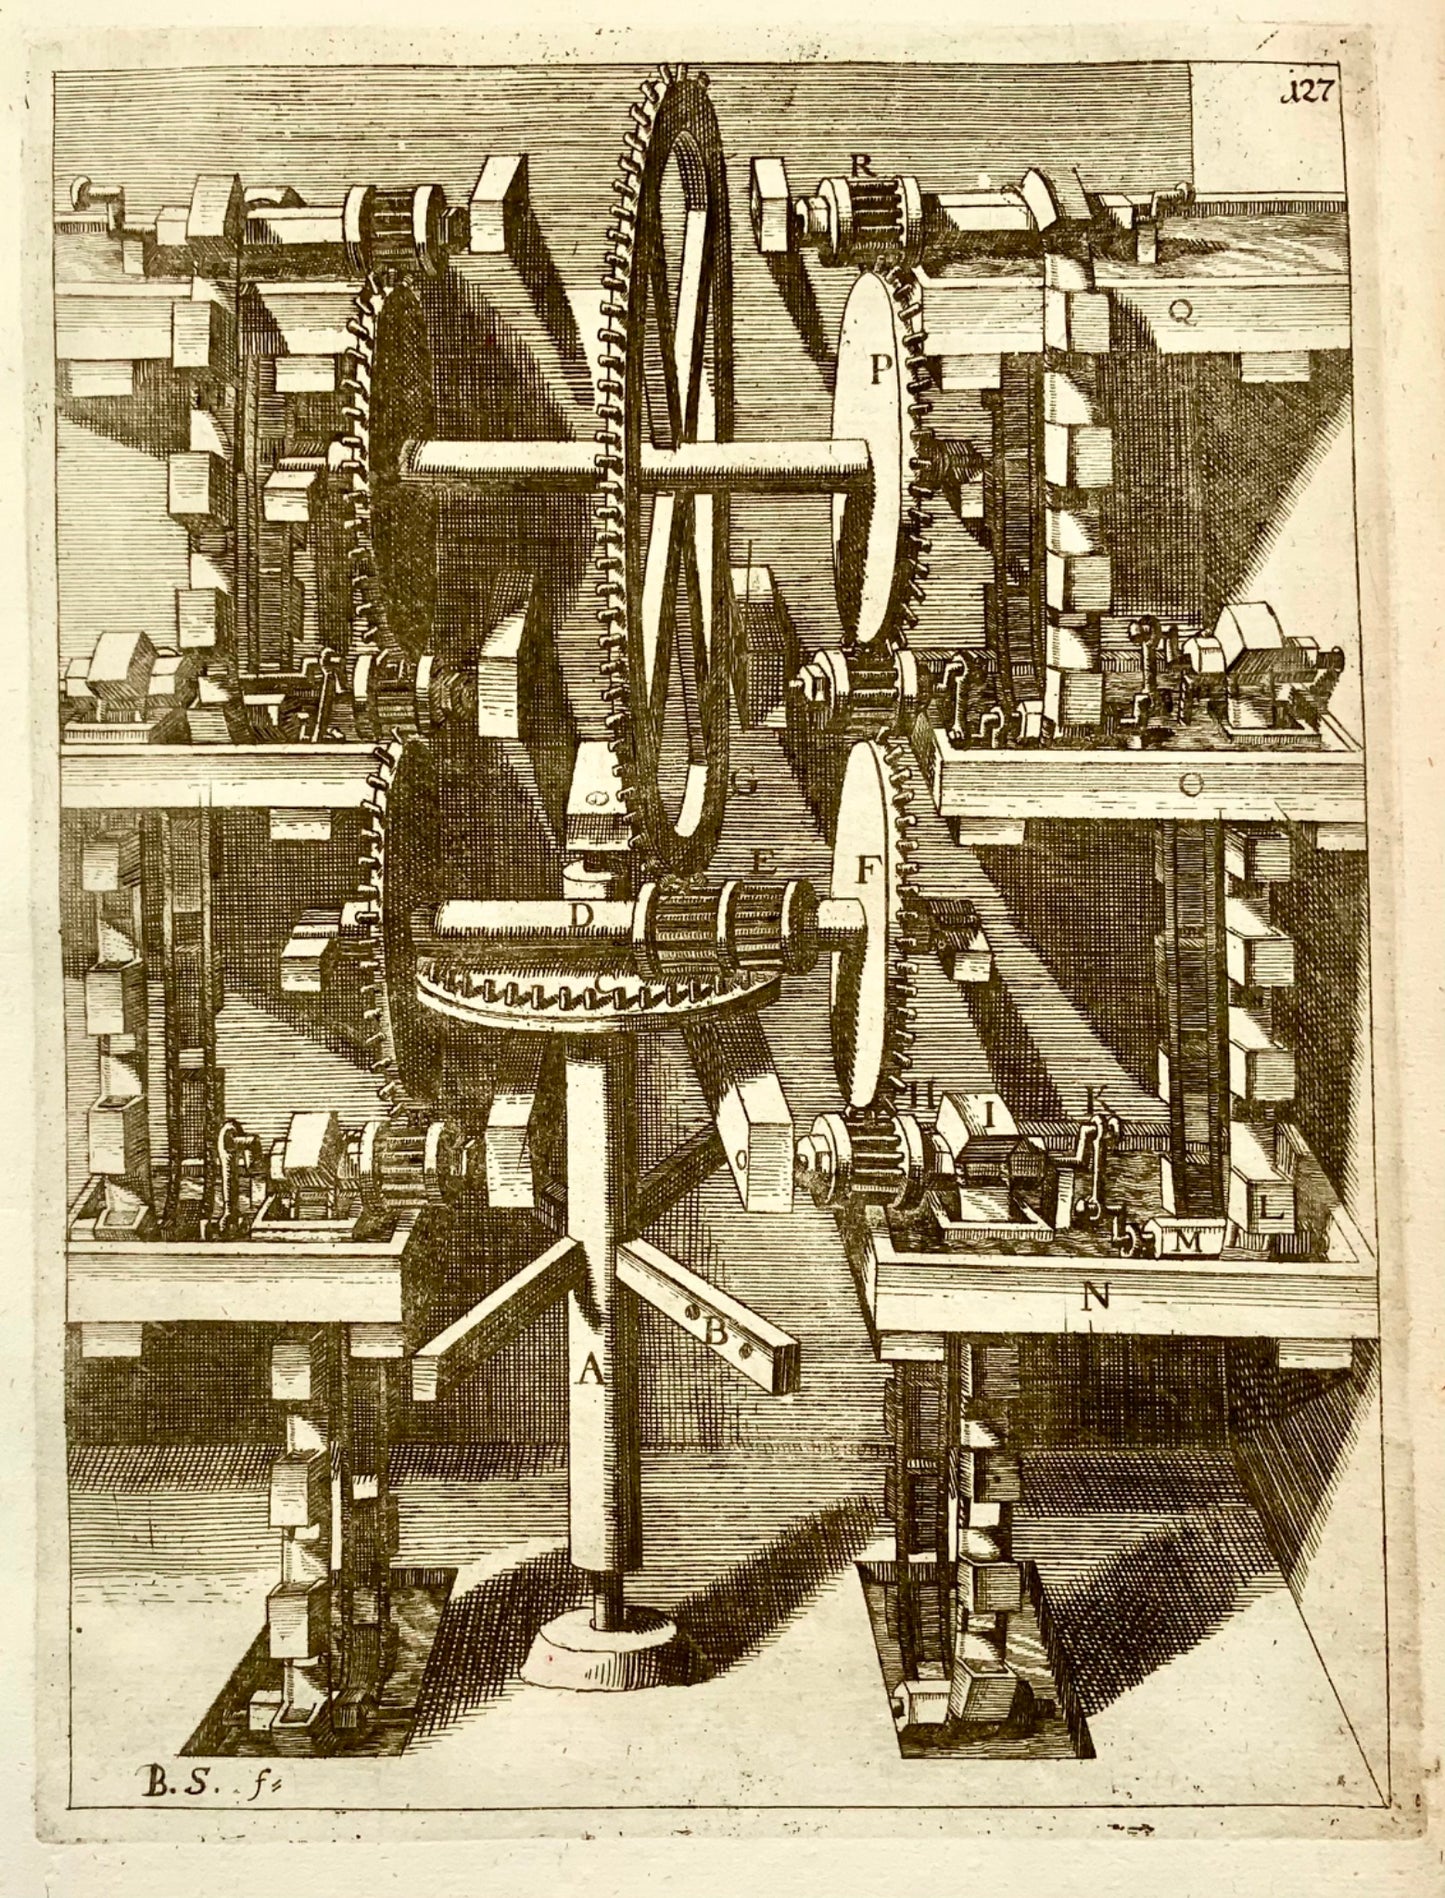 1662 Balth. Schwan; Boeckler, technology, raising machine, cogs, gears